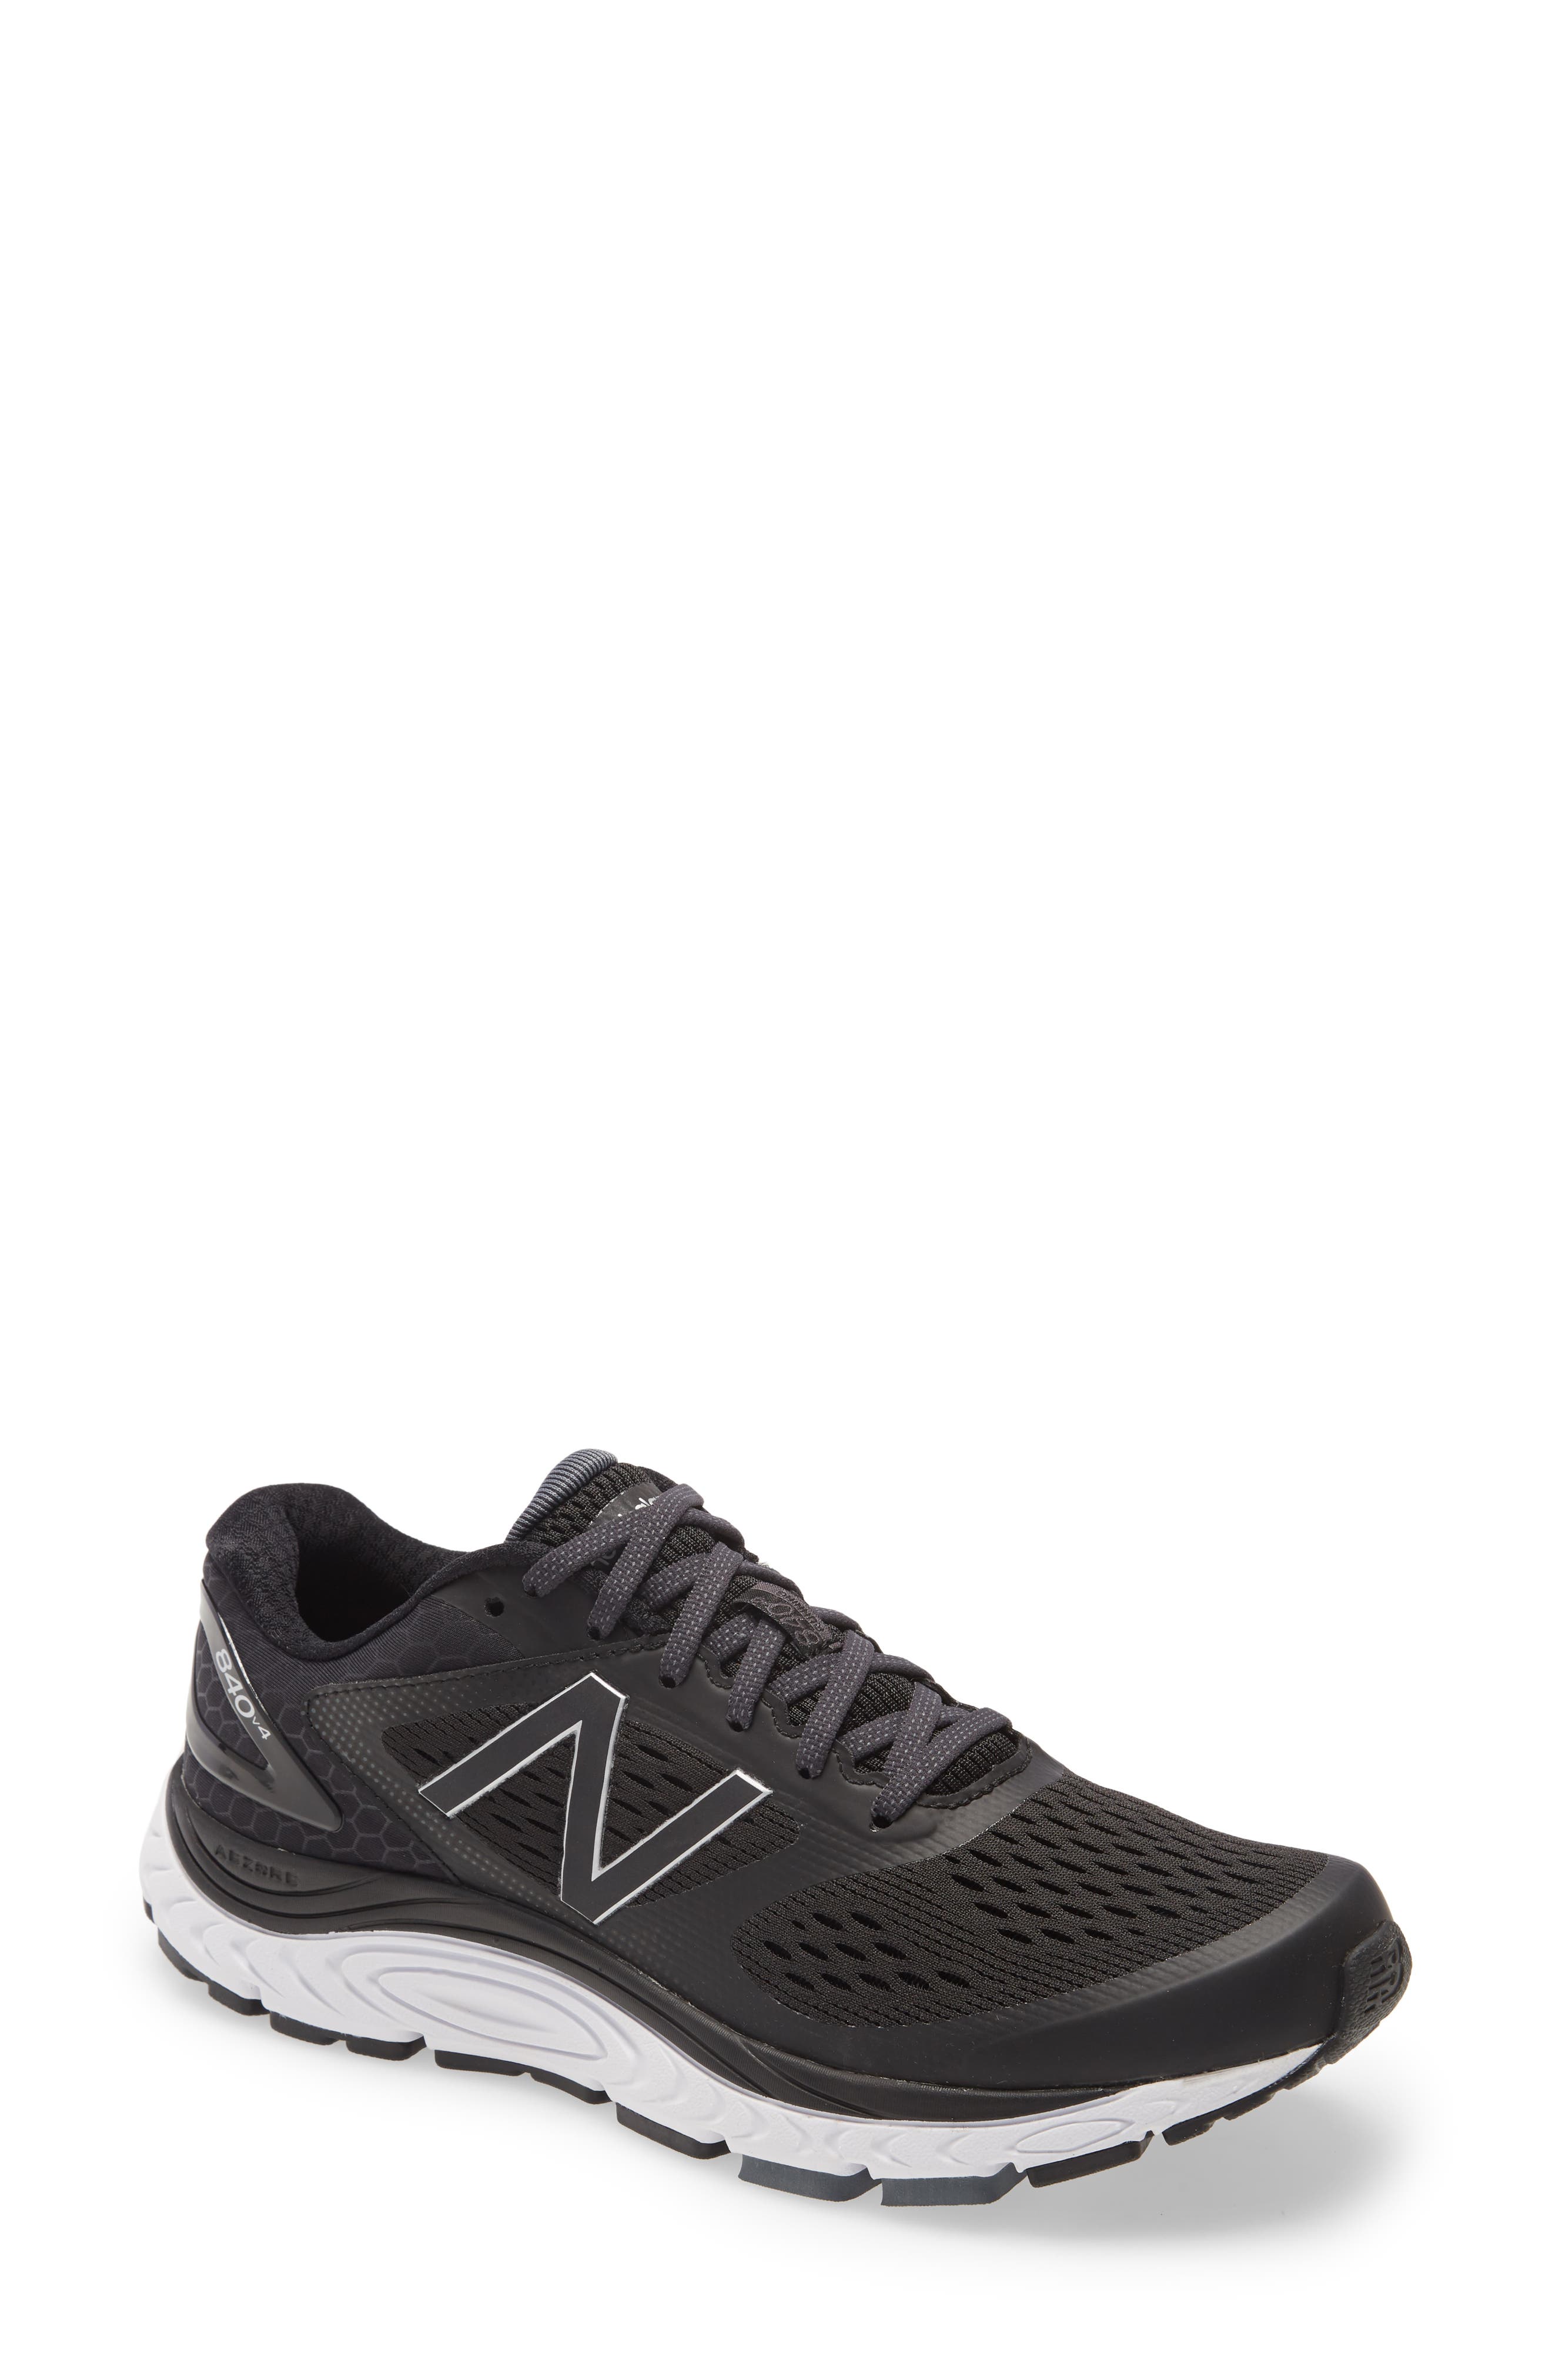 new balance 490 v5 men's running shoes